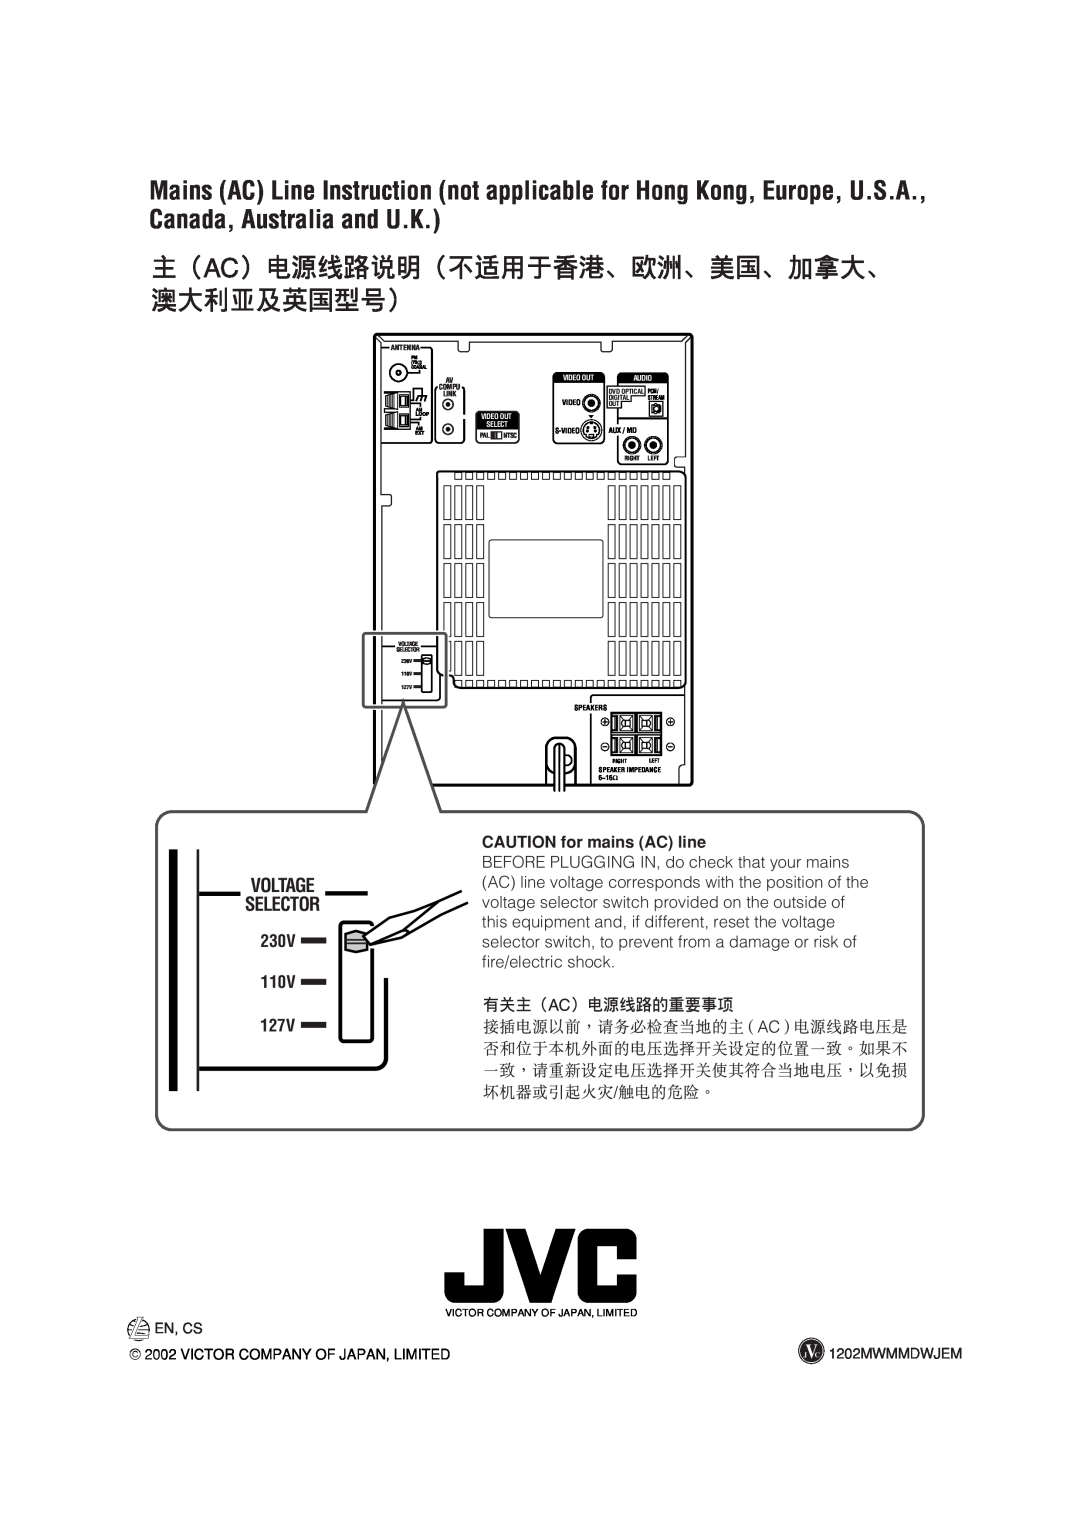 JVC LVT0954-007A manual 230V, 110V, CAUTION for mains AC line 